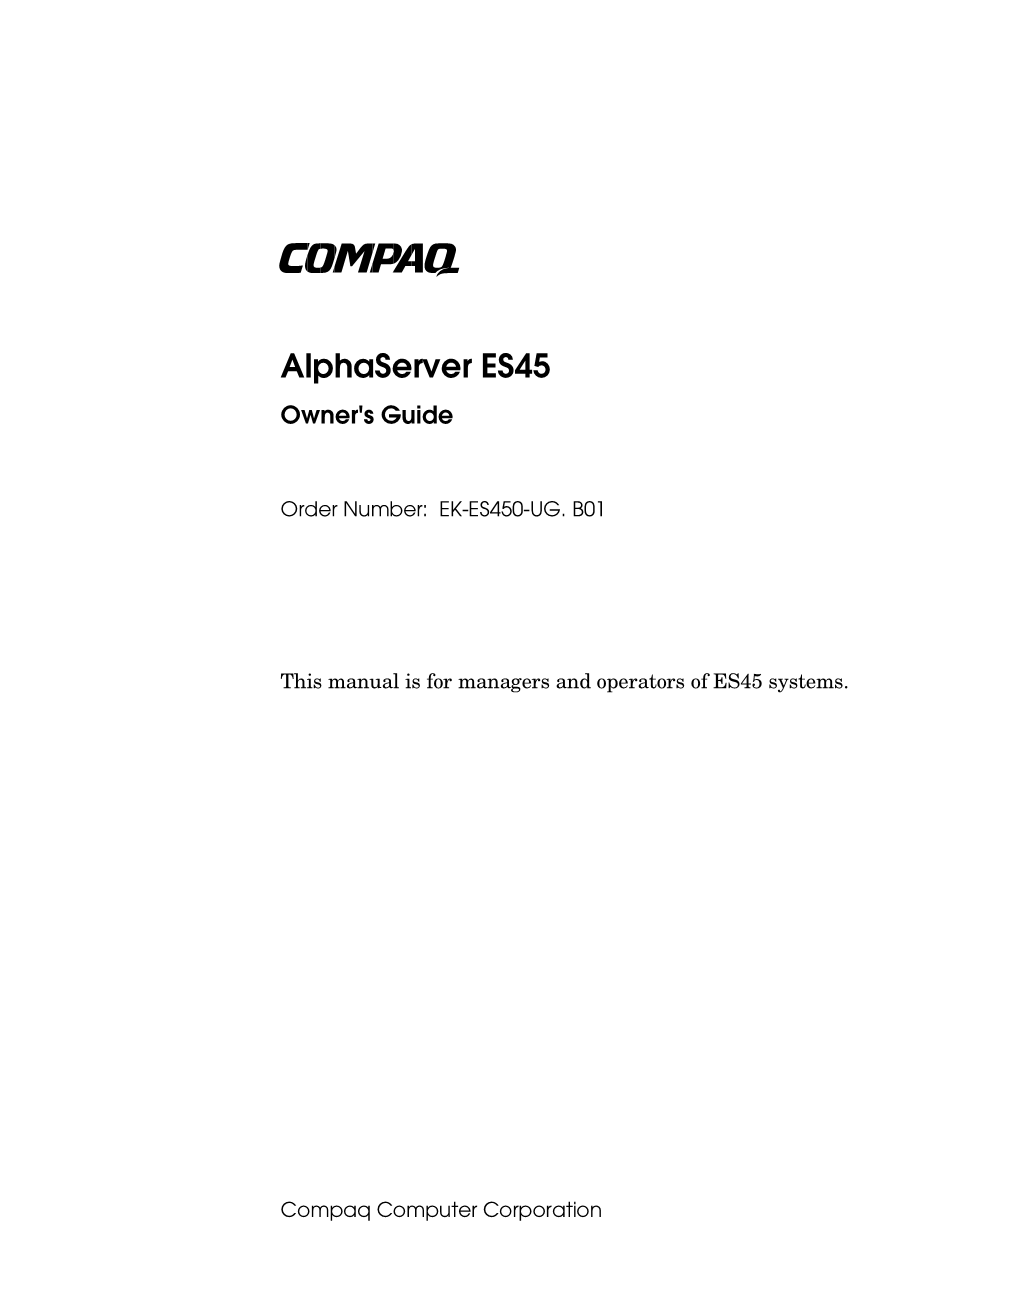 Alphaserver ES45 Owner's Guide